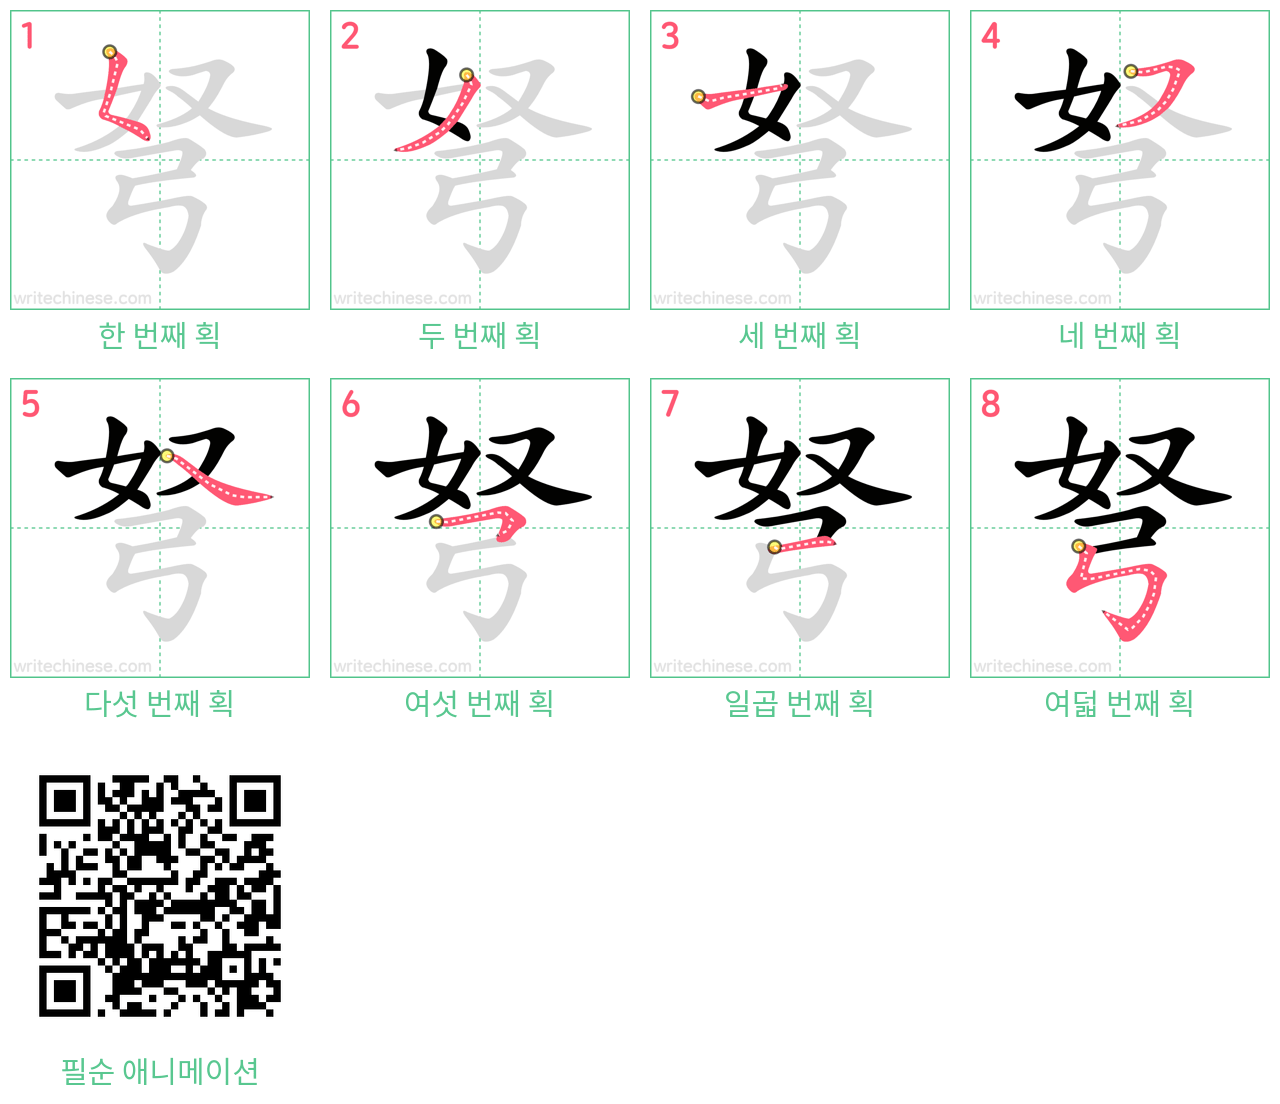 弩 step-by-step stroke order diagrams